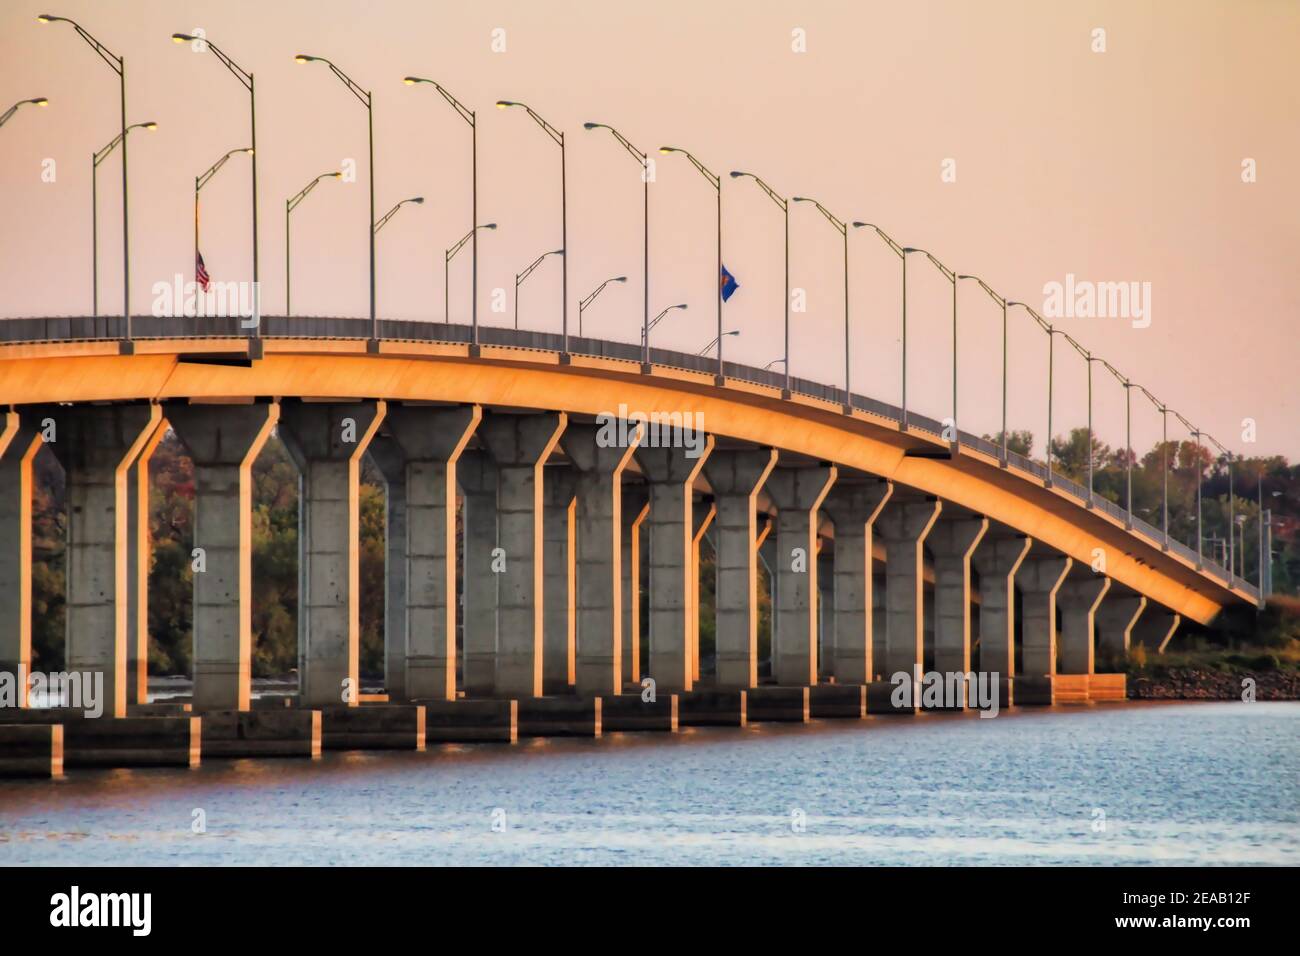 Schräg auf die Sailboat Bridge, eine Brücke, die den Grand Lake in Grove Oklahoma überquert, zeigt dieser Blick vom Wasser aus bei Sonnenuntergang seine Höhe. Stockfoto